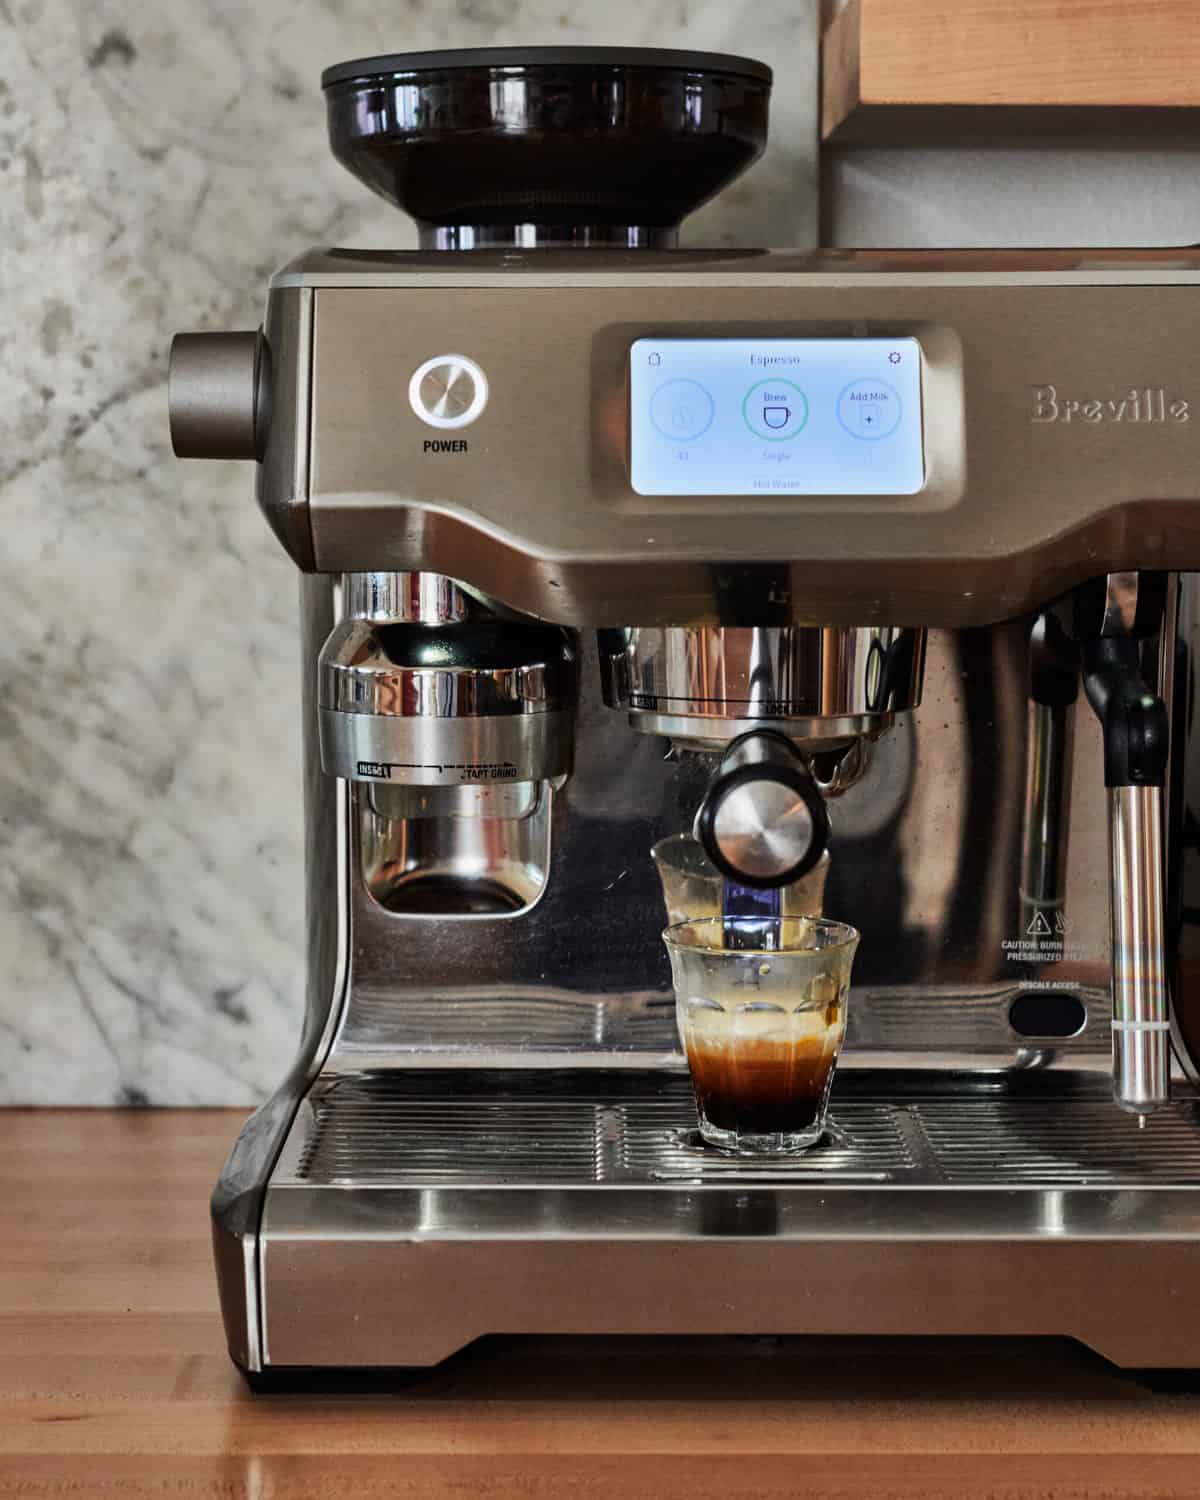 Espresso maker with espresso being brewed 